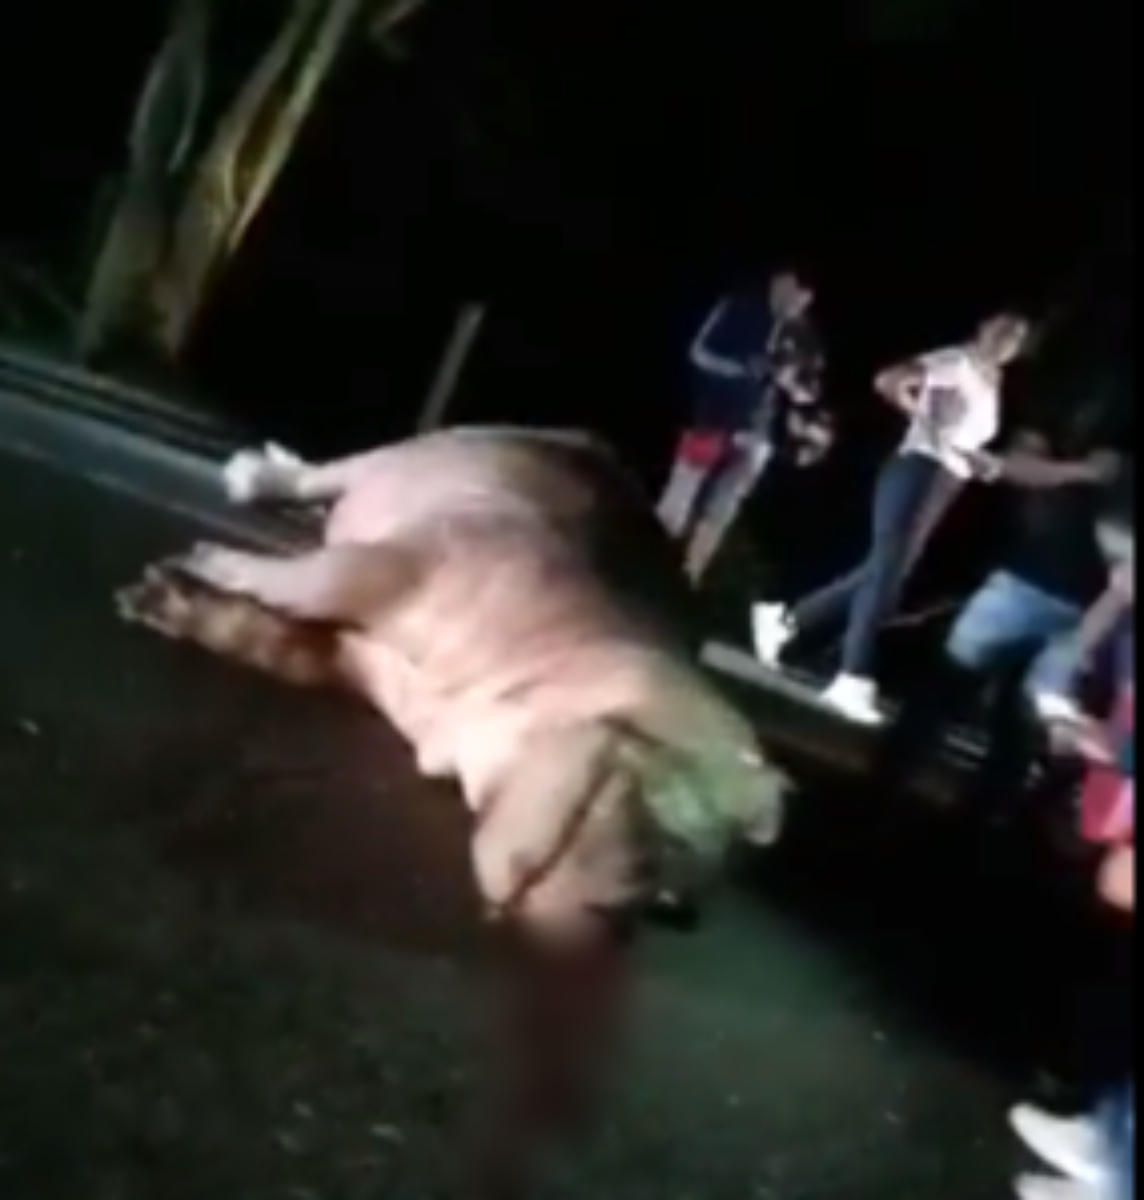  Hipopótamo de Pablo Escobar morre atropelado na Colômbia 